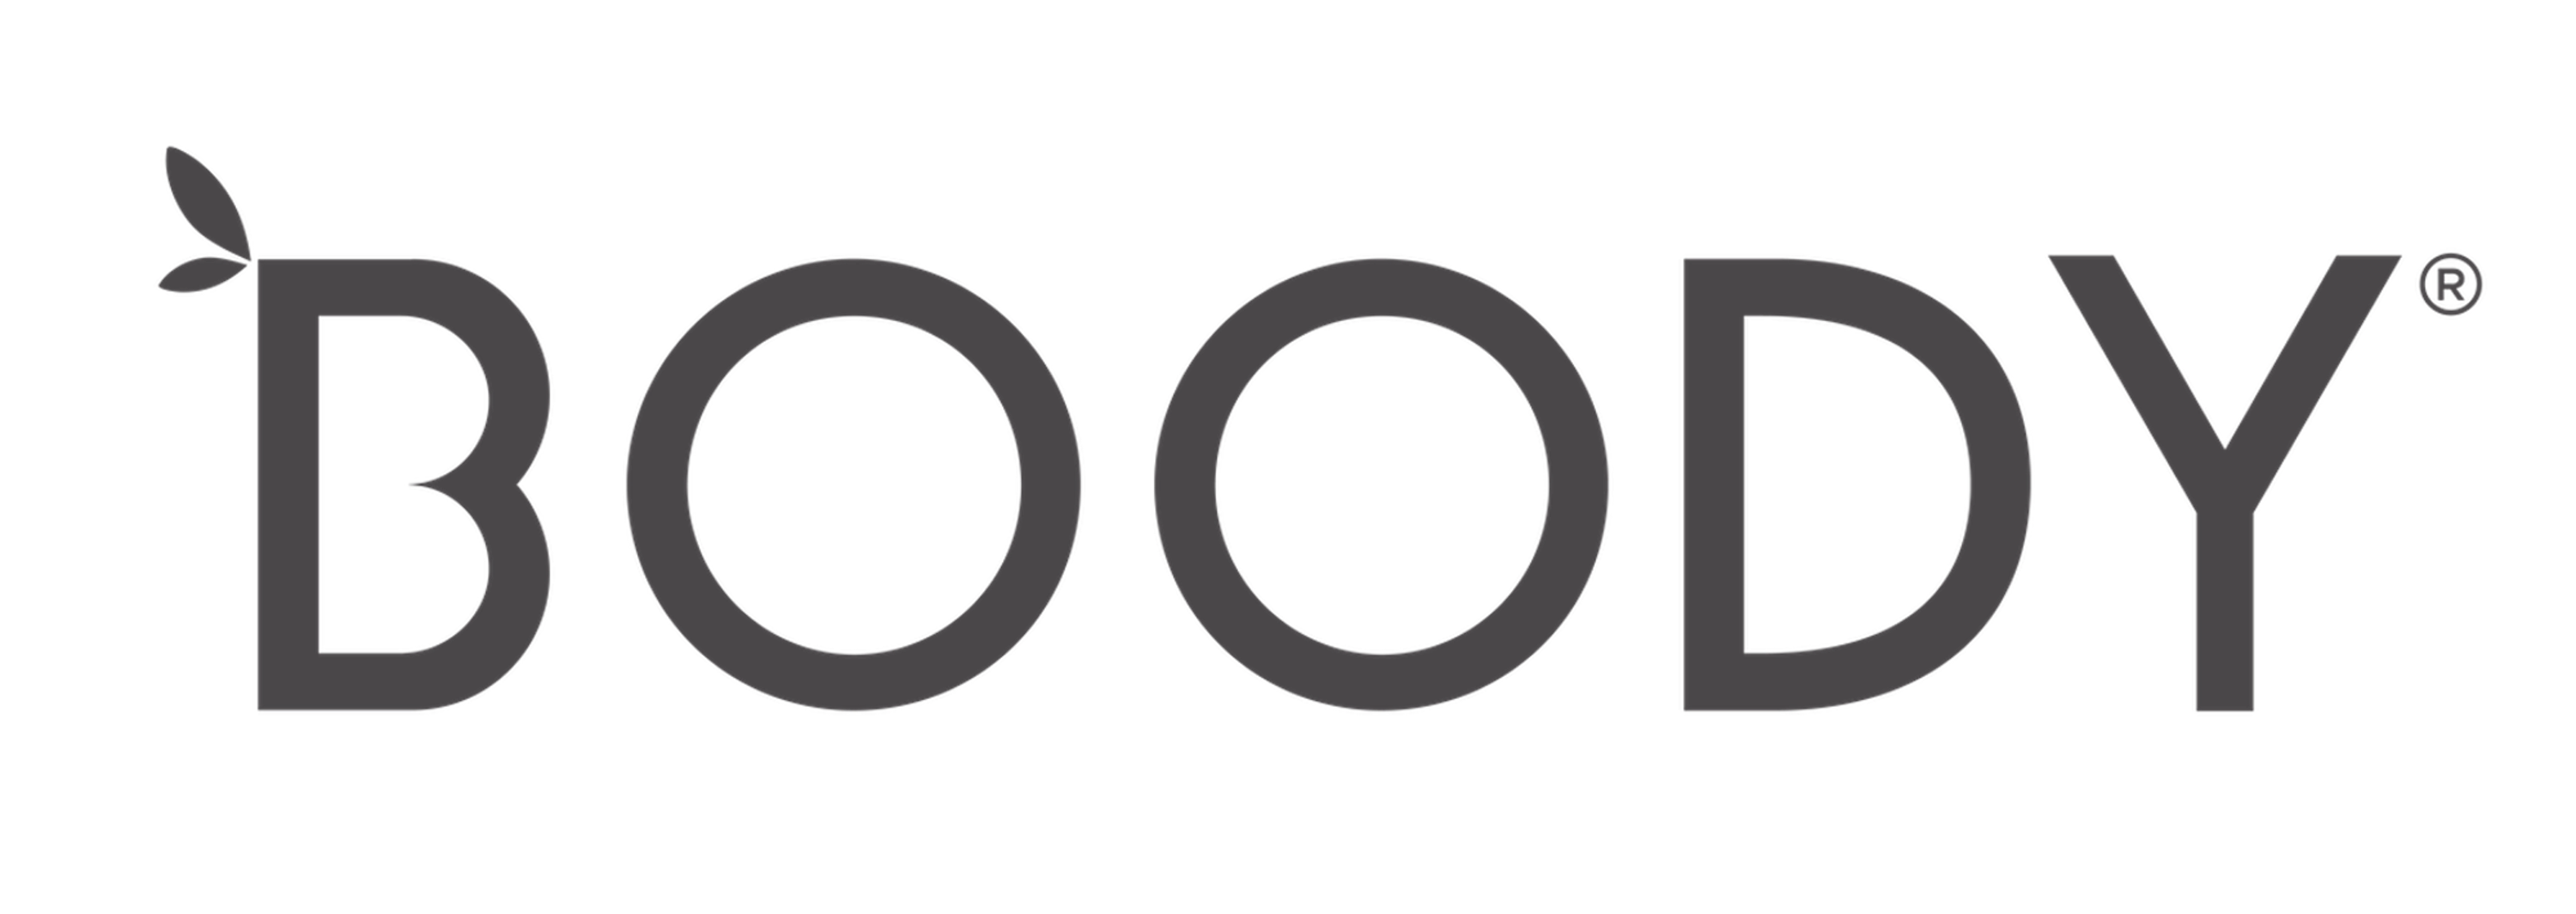 Boody EU logo